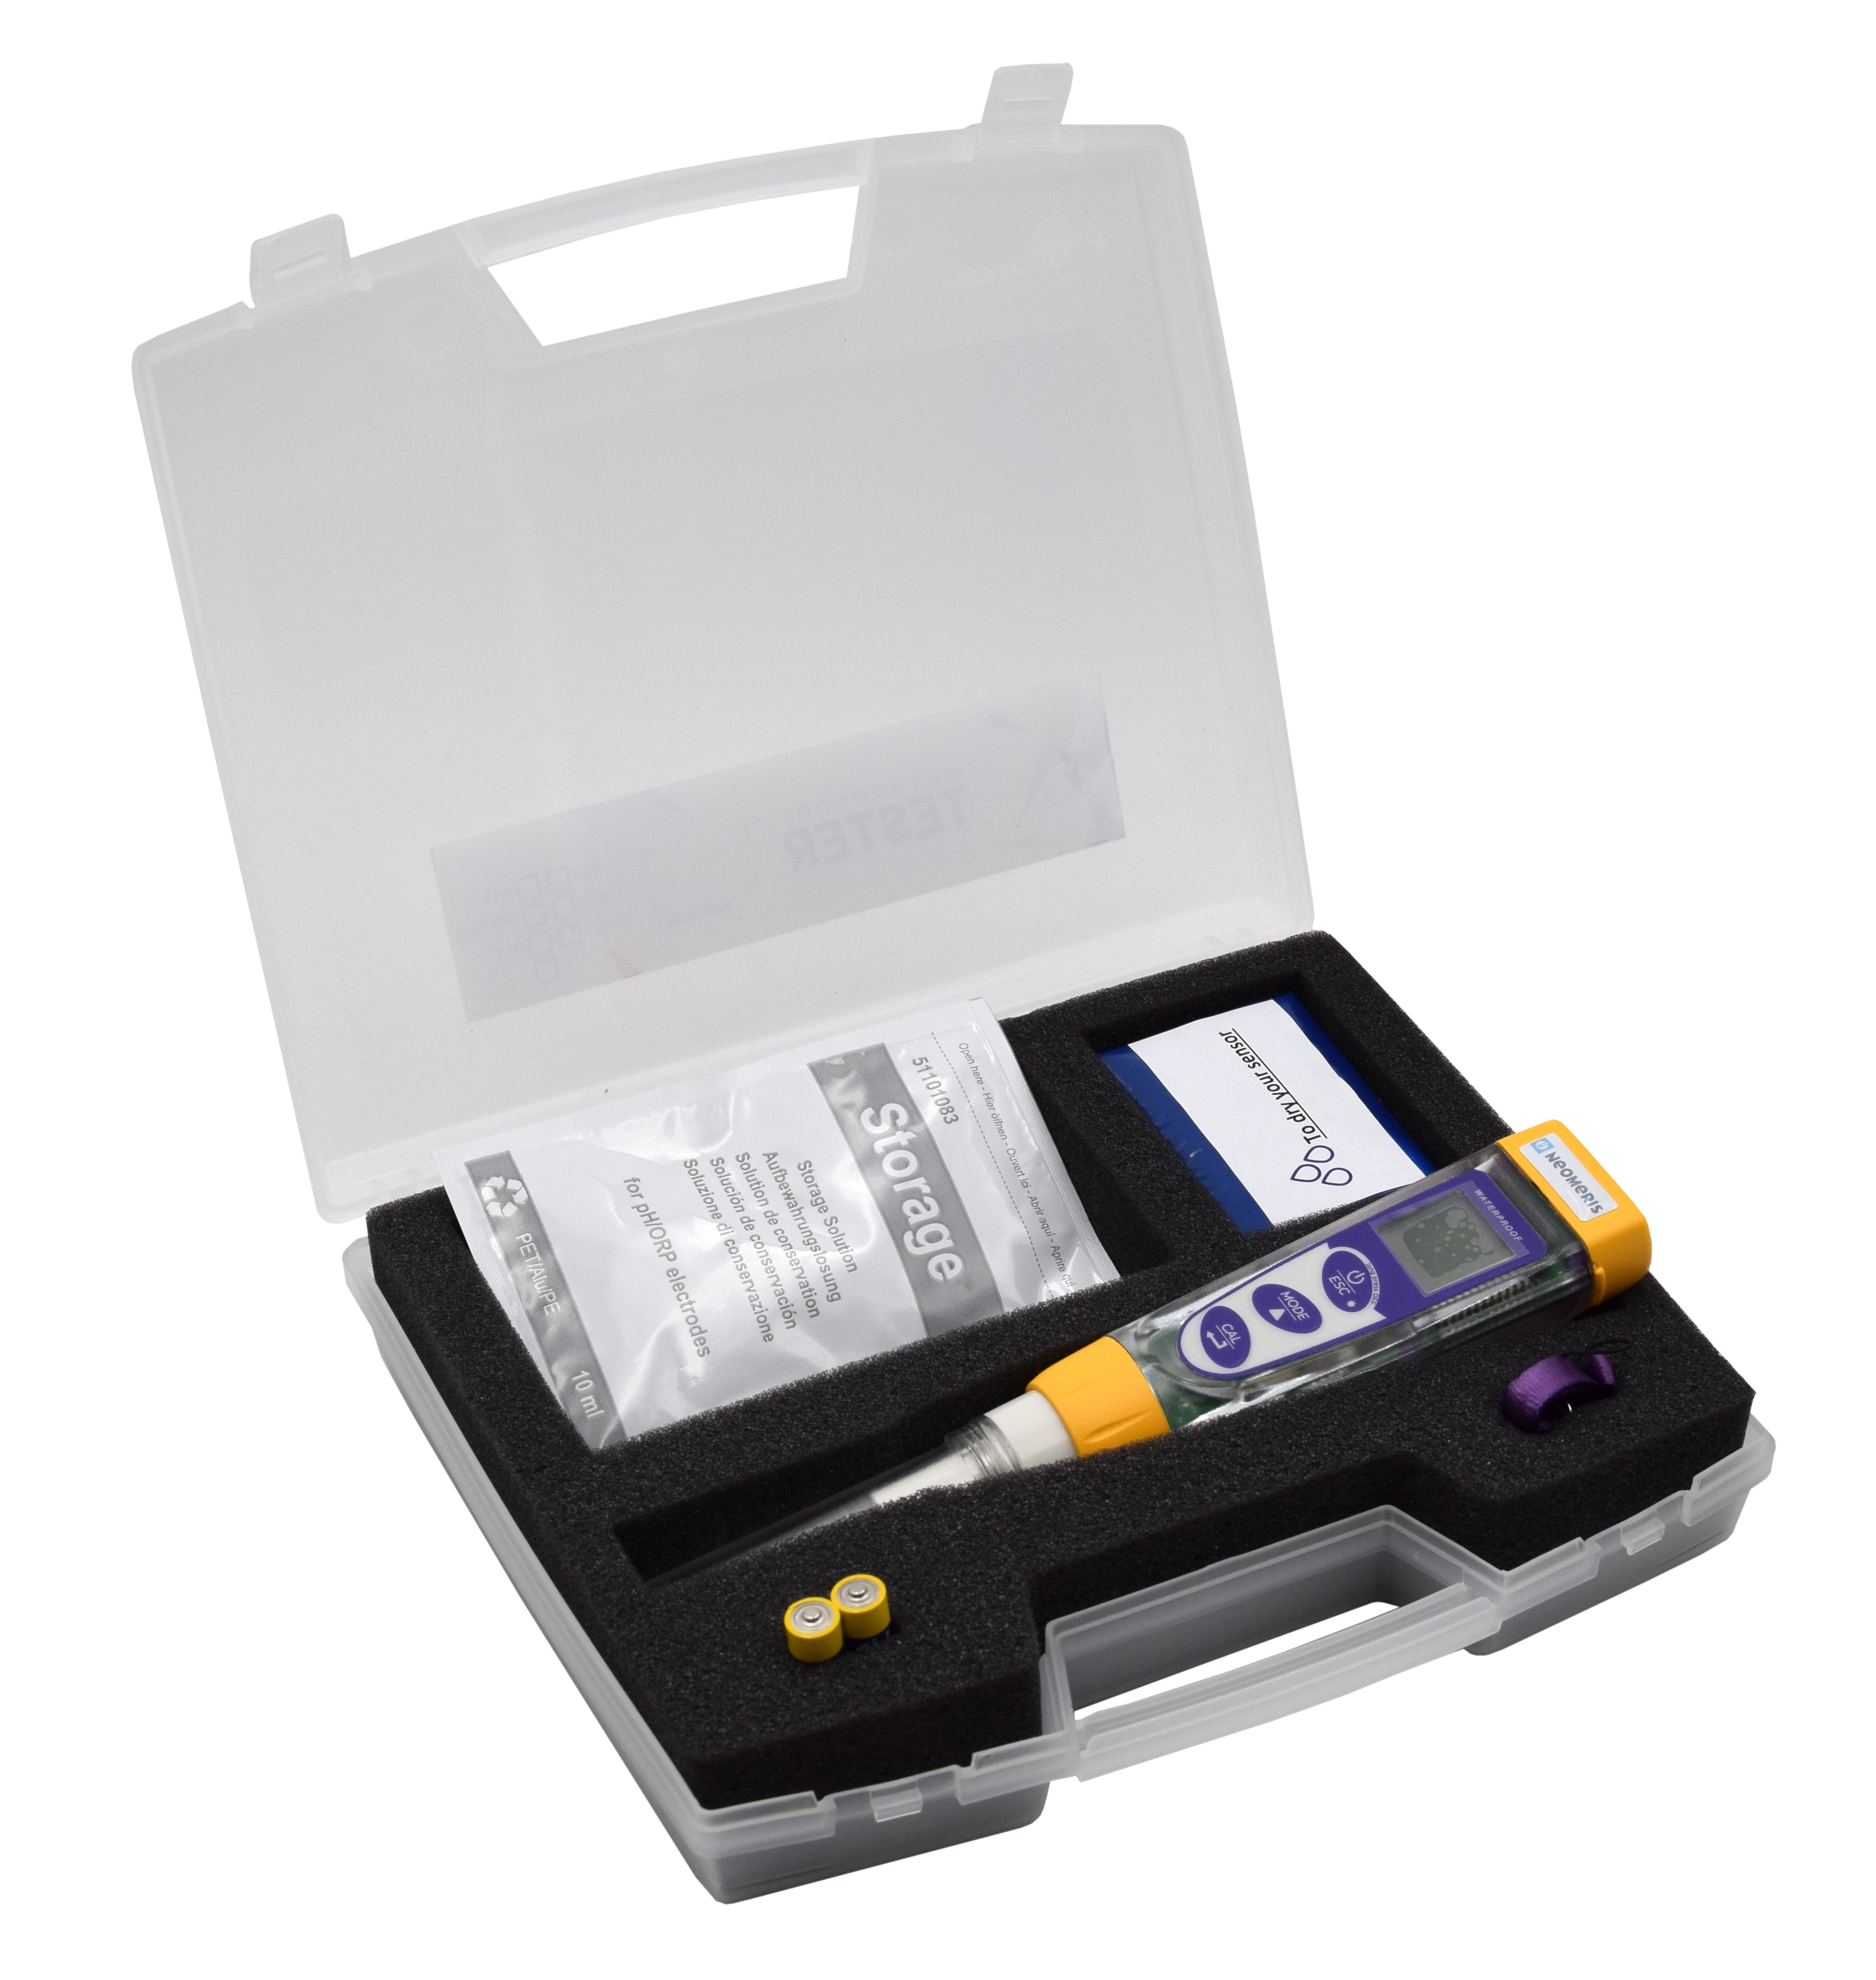 Advanced Redox-Temperatur Pocket-Tester im Messkoffer - Handtester zur Bestimmung des Redox-Wertes und der Temperatur